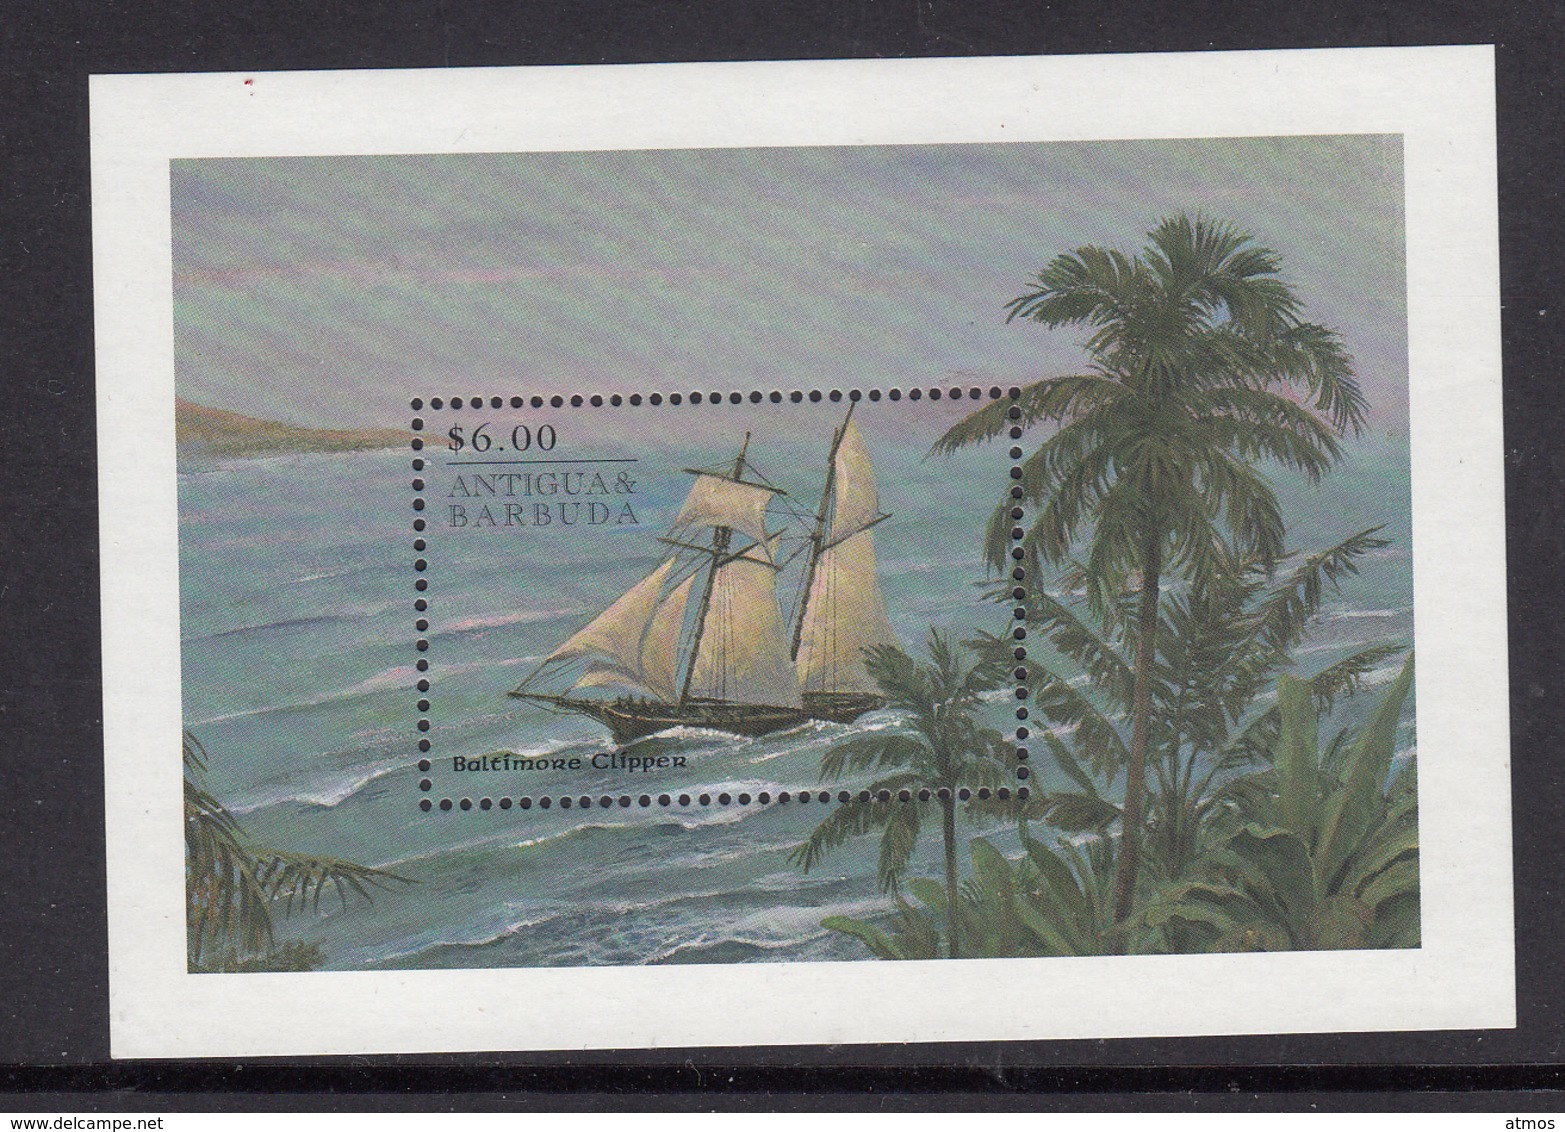 Antiqua & Barbuda MNH Michel Nr Block 398 From 1998 / Catw 5.50 EUR - Antigua Und Barbuda (1981-...)